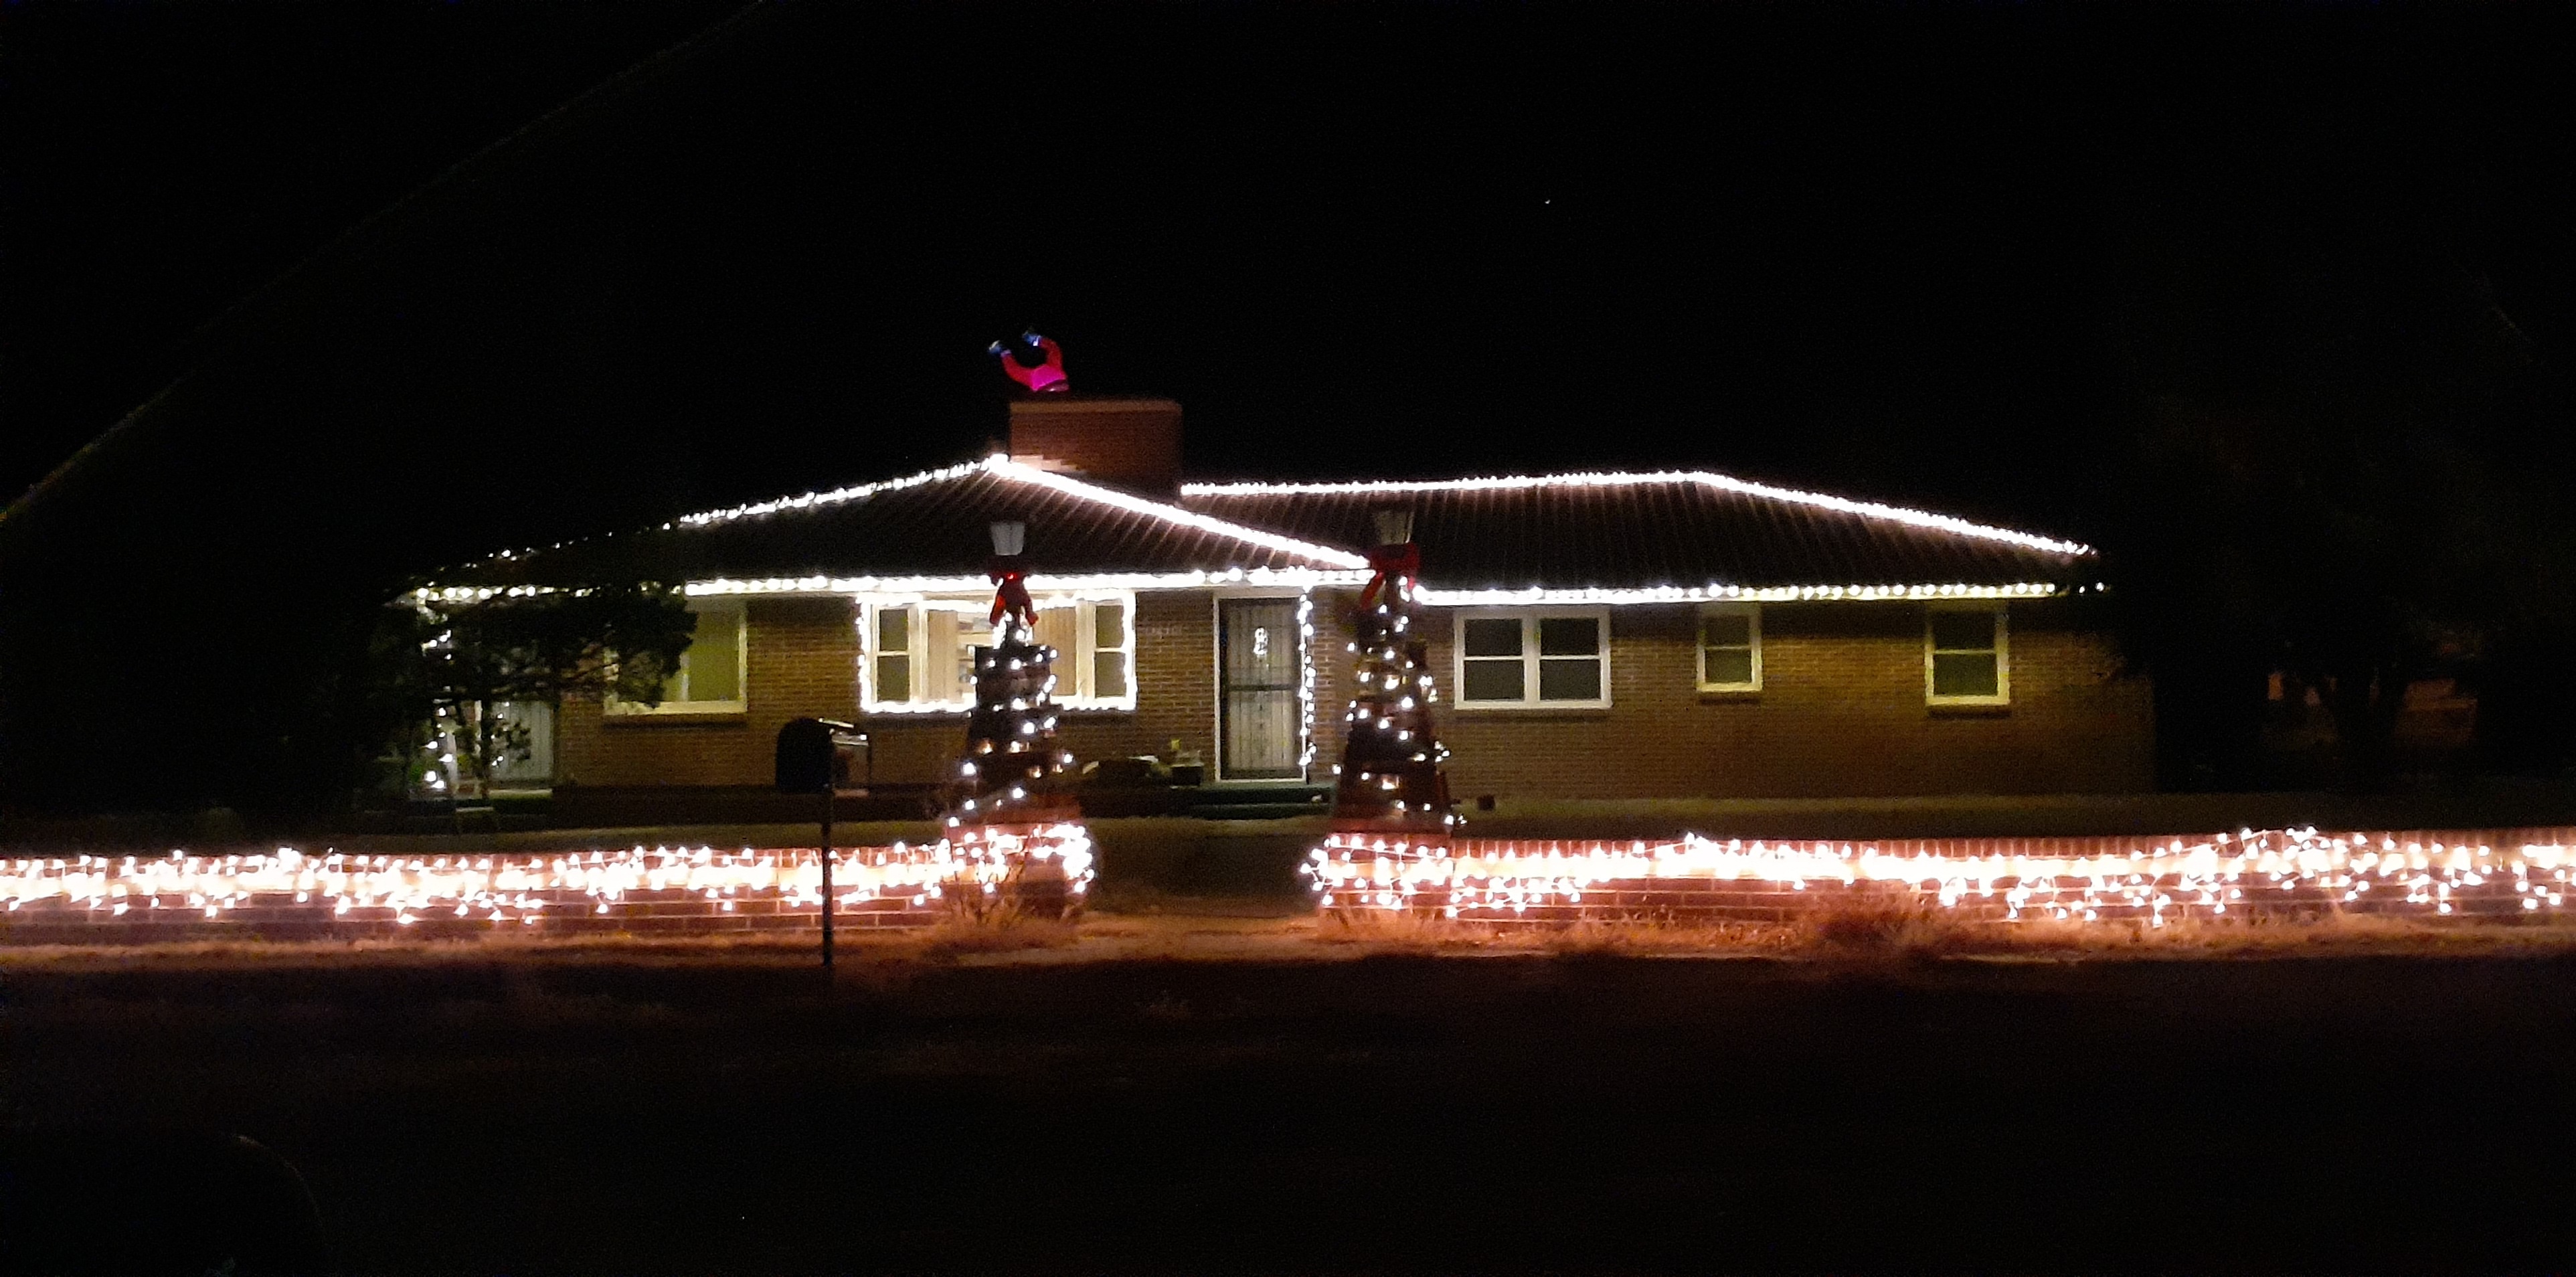 Southeast Colorado Christmas Lights seconews.org 